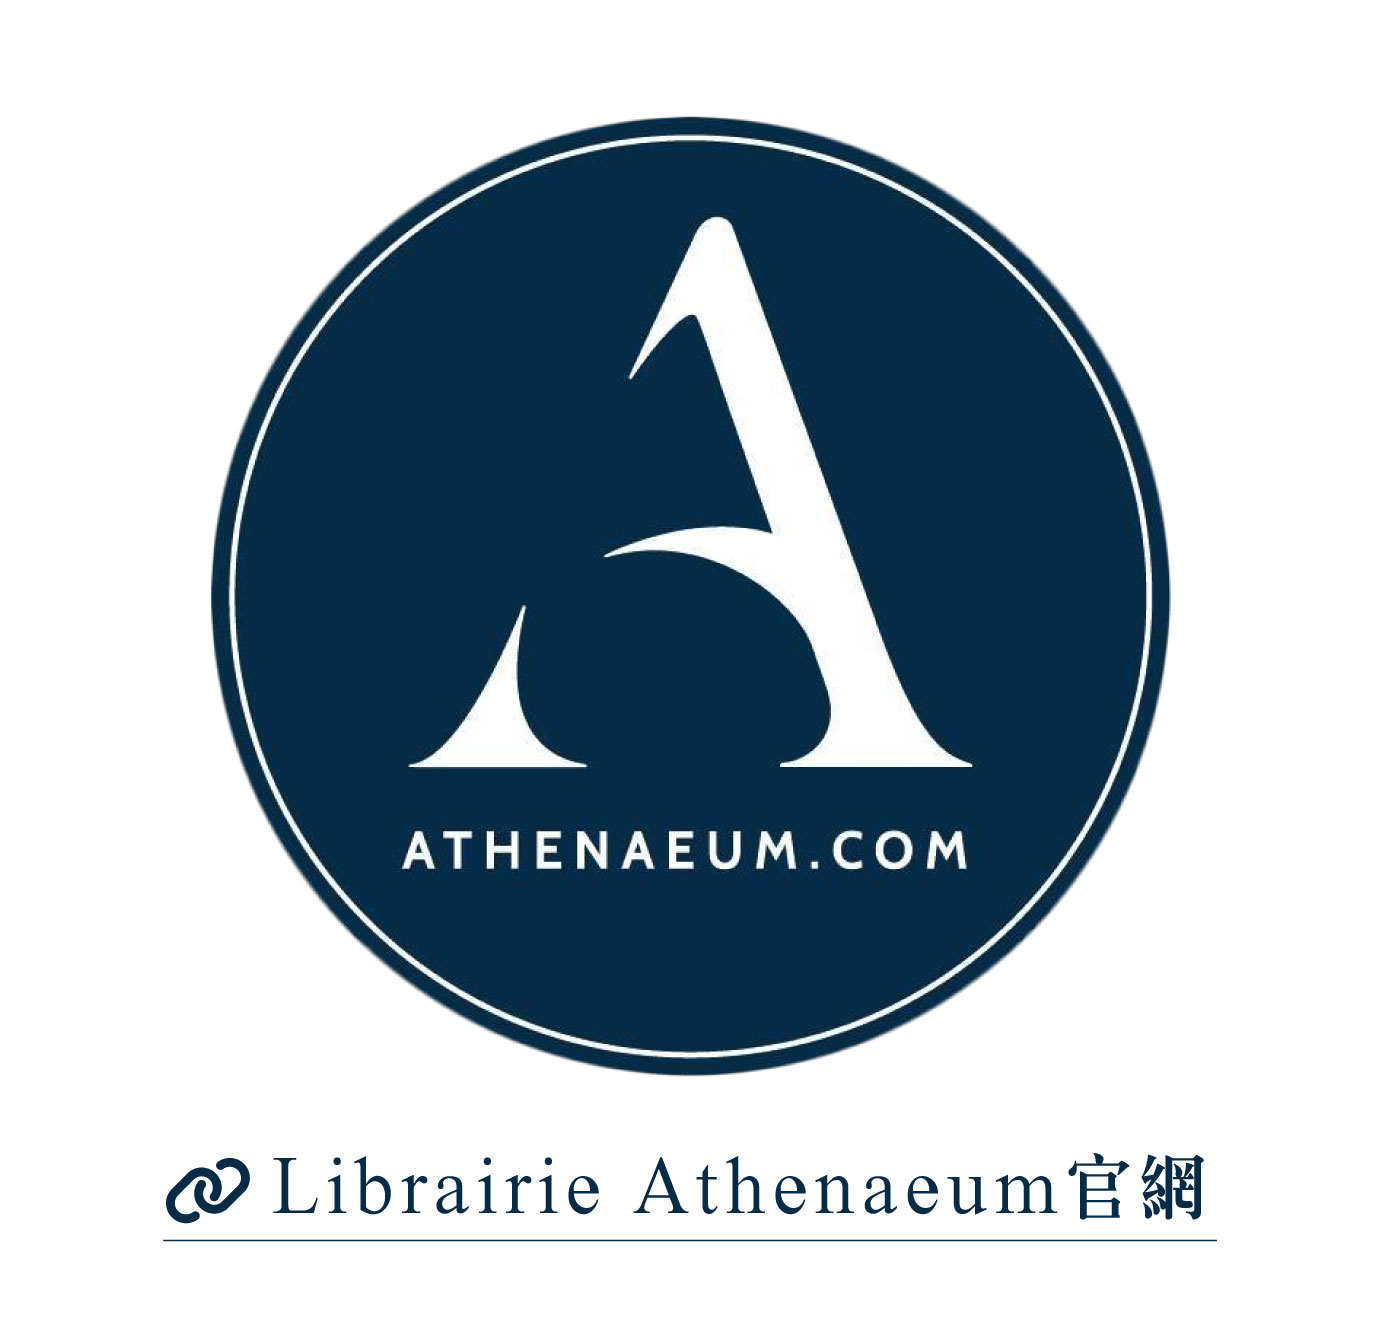 Librairie Athenaeum